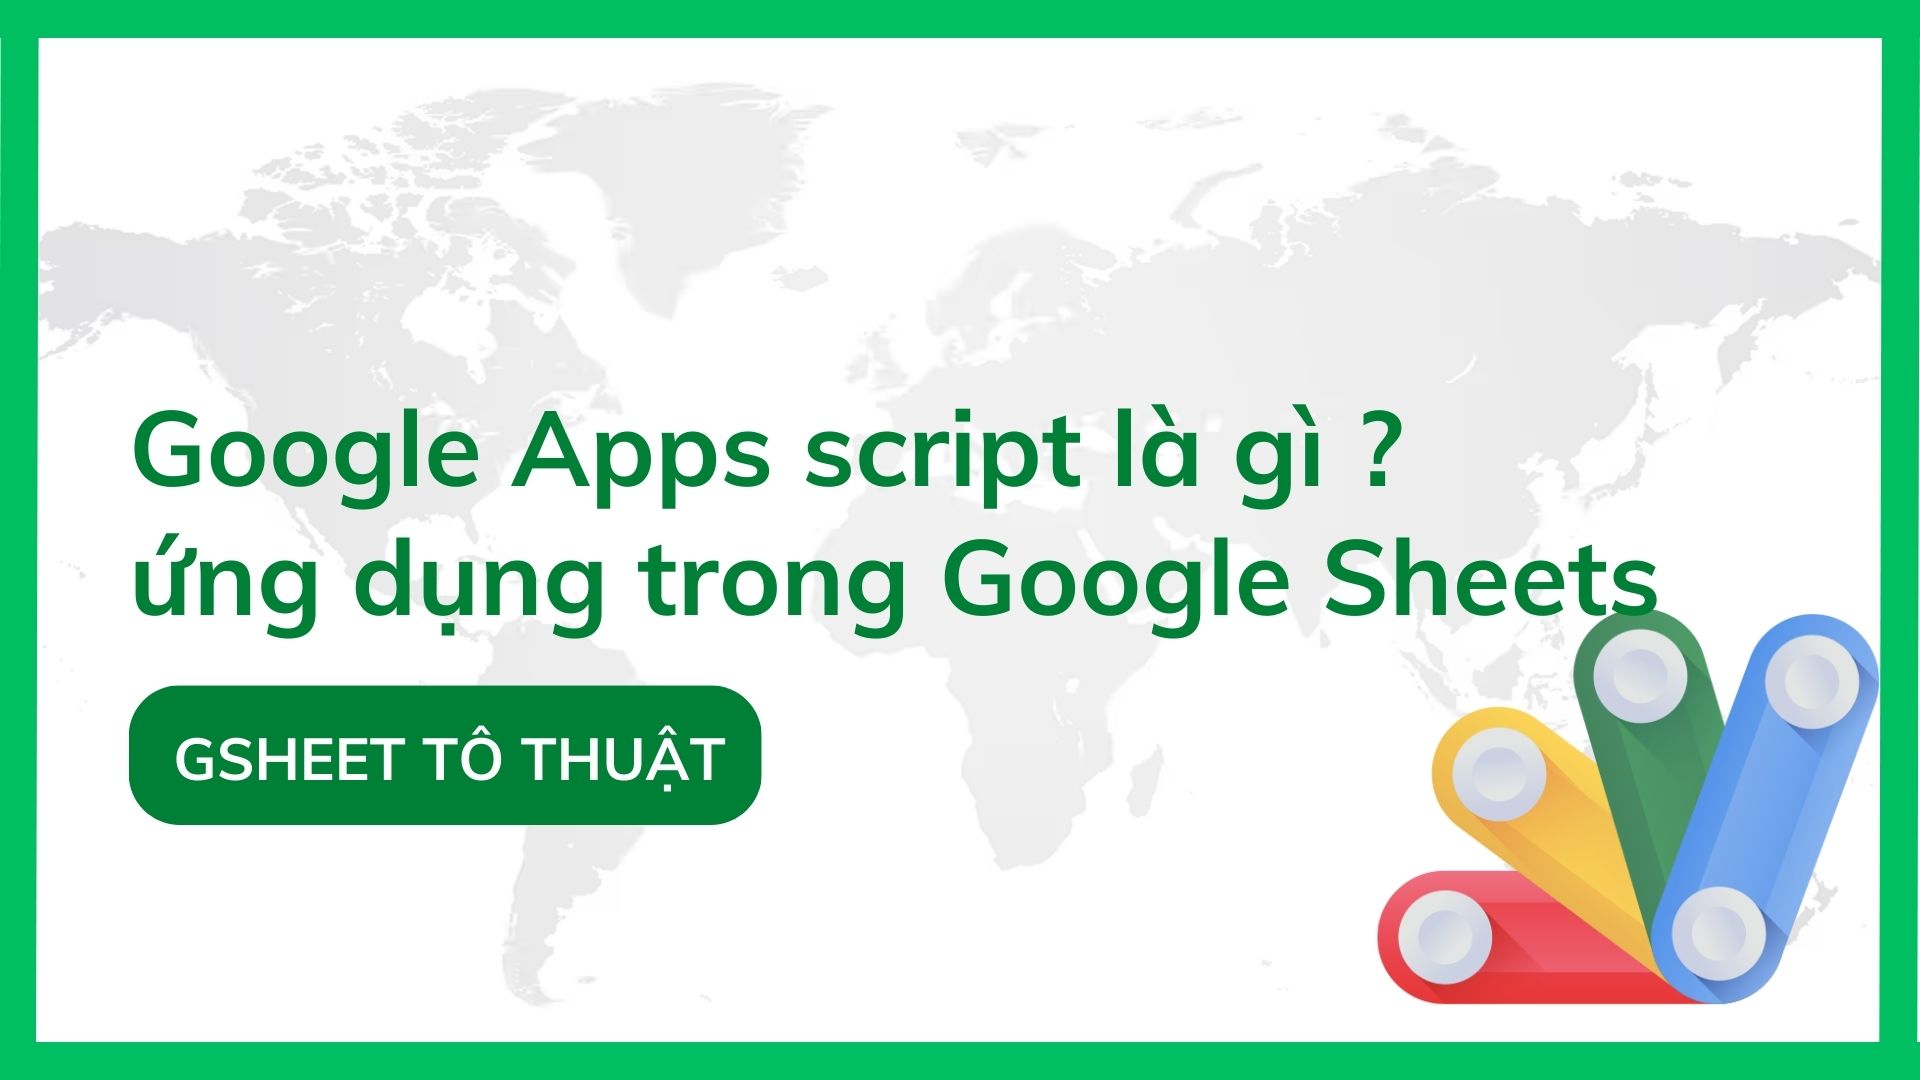 Google Apps script là gì ? ứng dụng trong Google Sheets